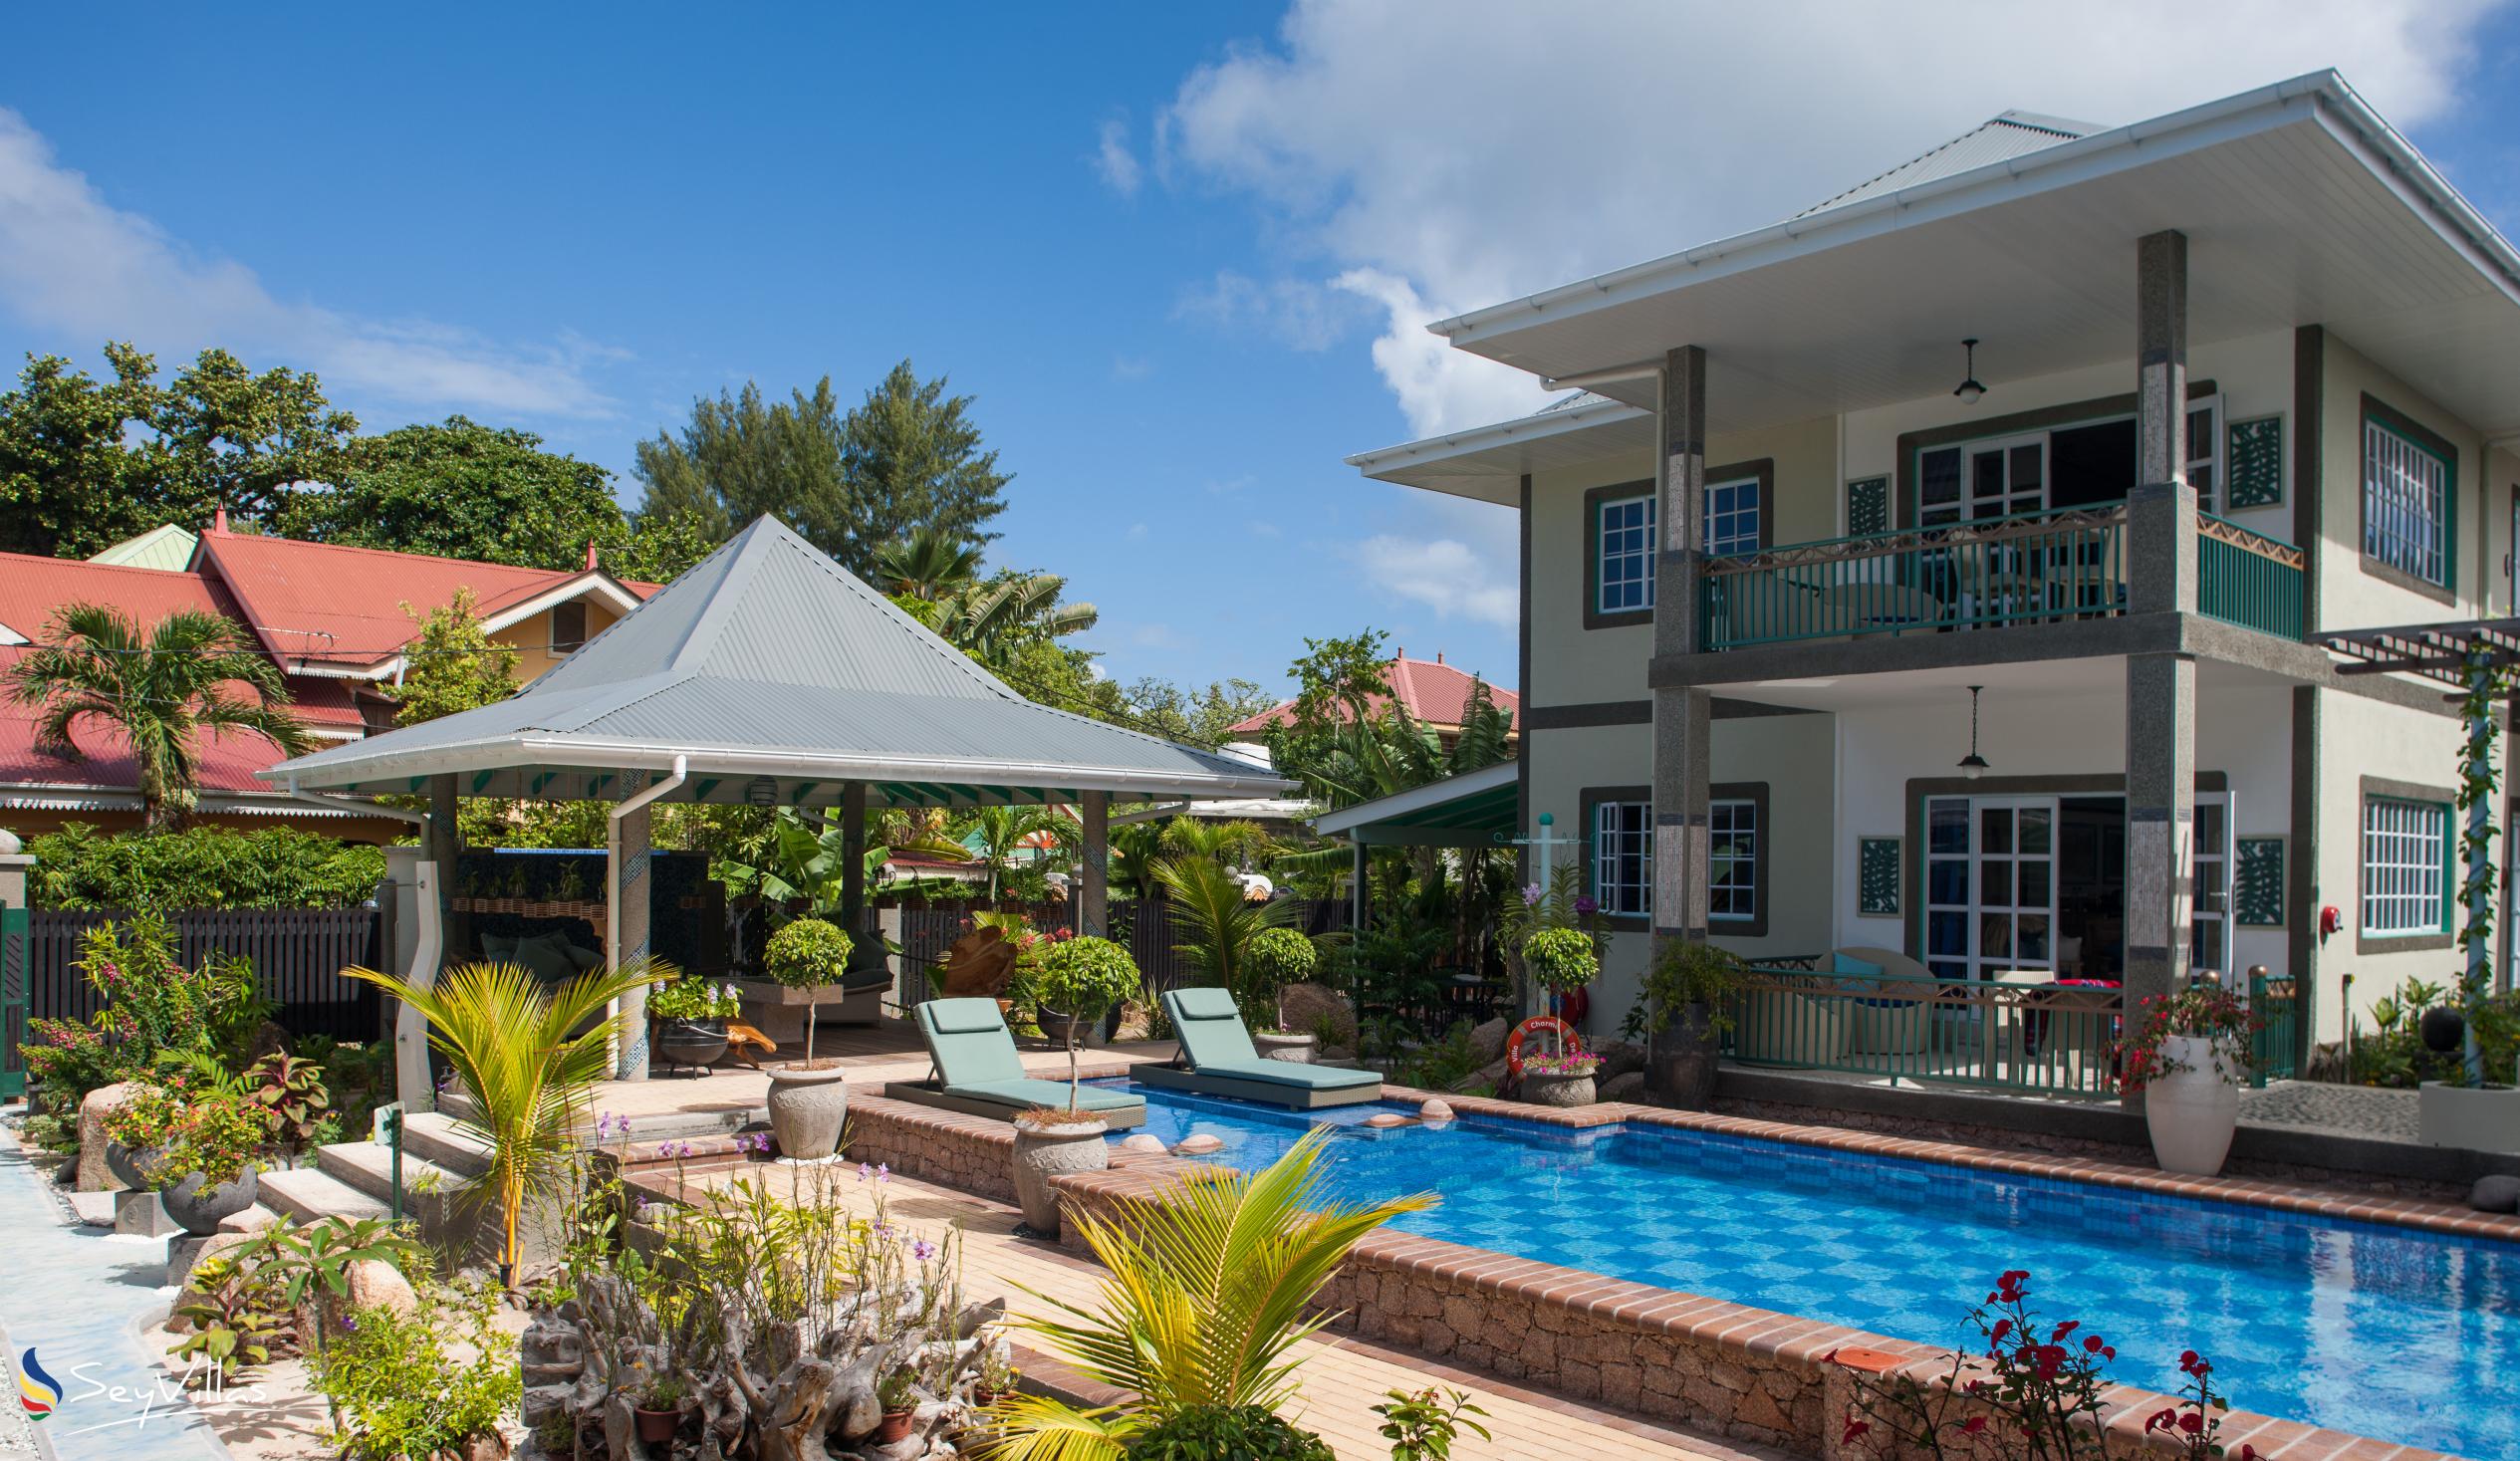 Foto 15: Villa Charme De L'ile - Aussenbereich - La Digue (Seychellen)